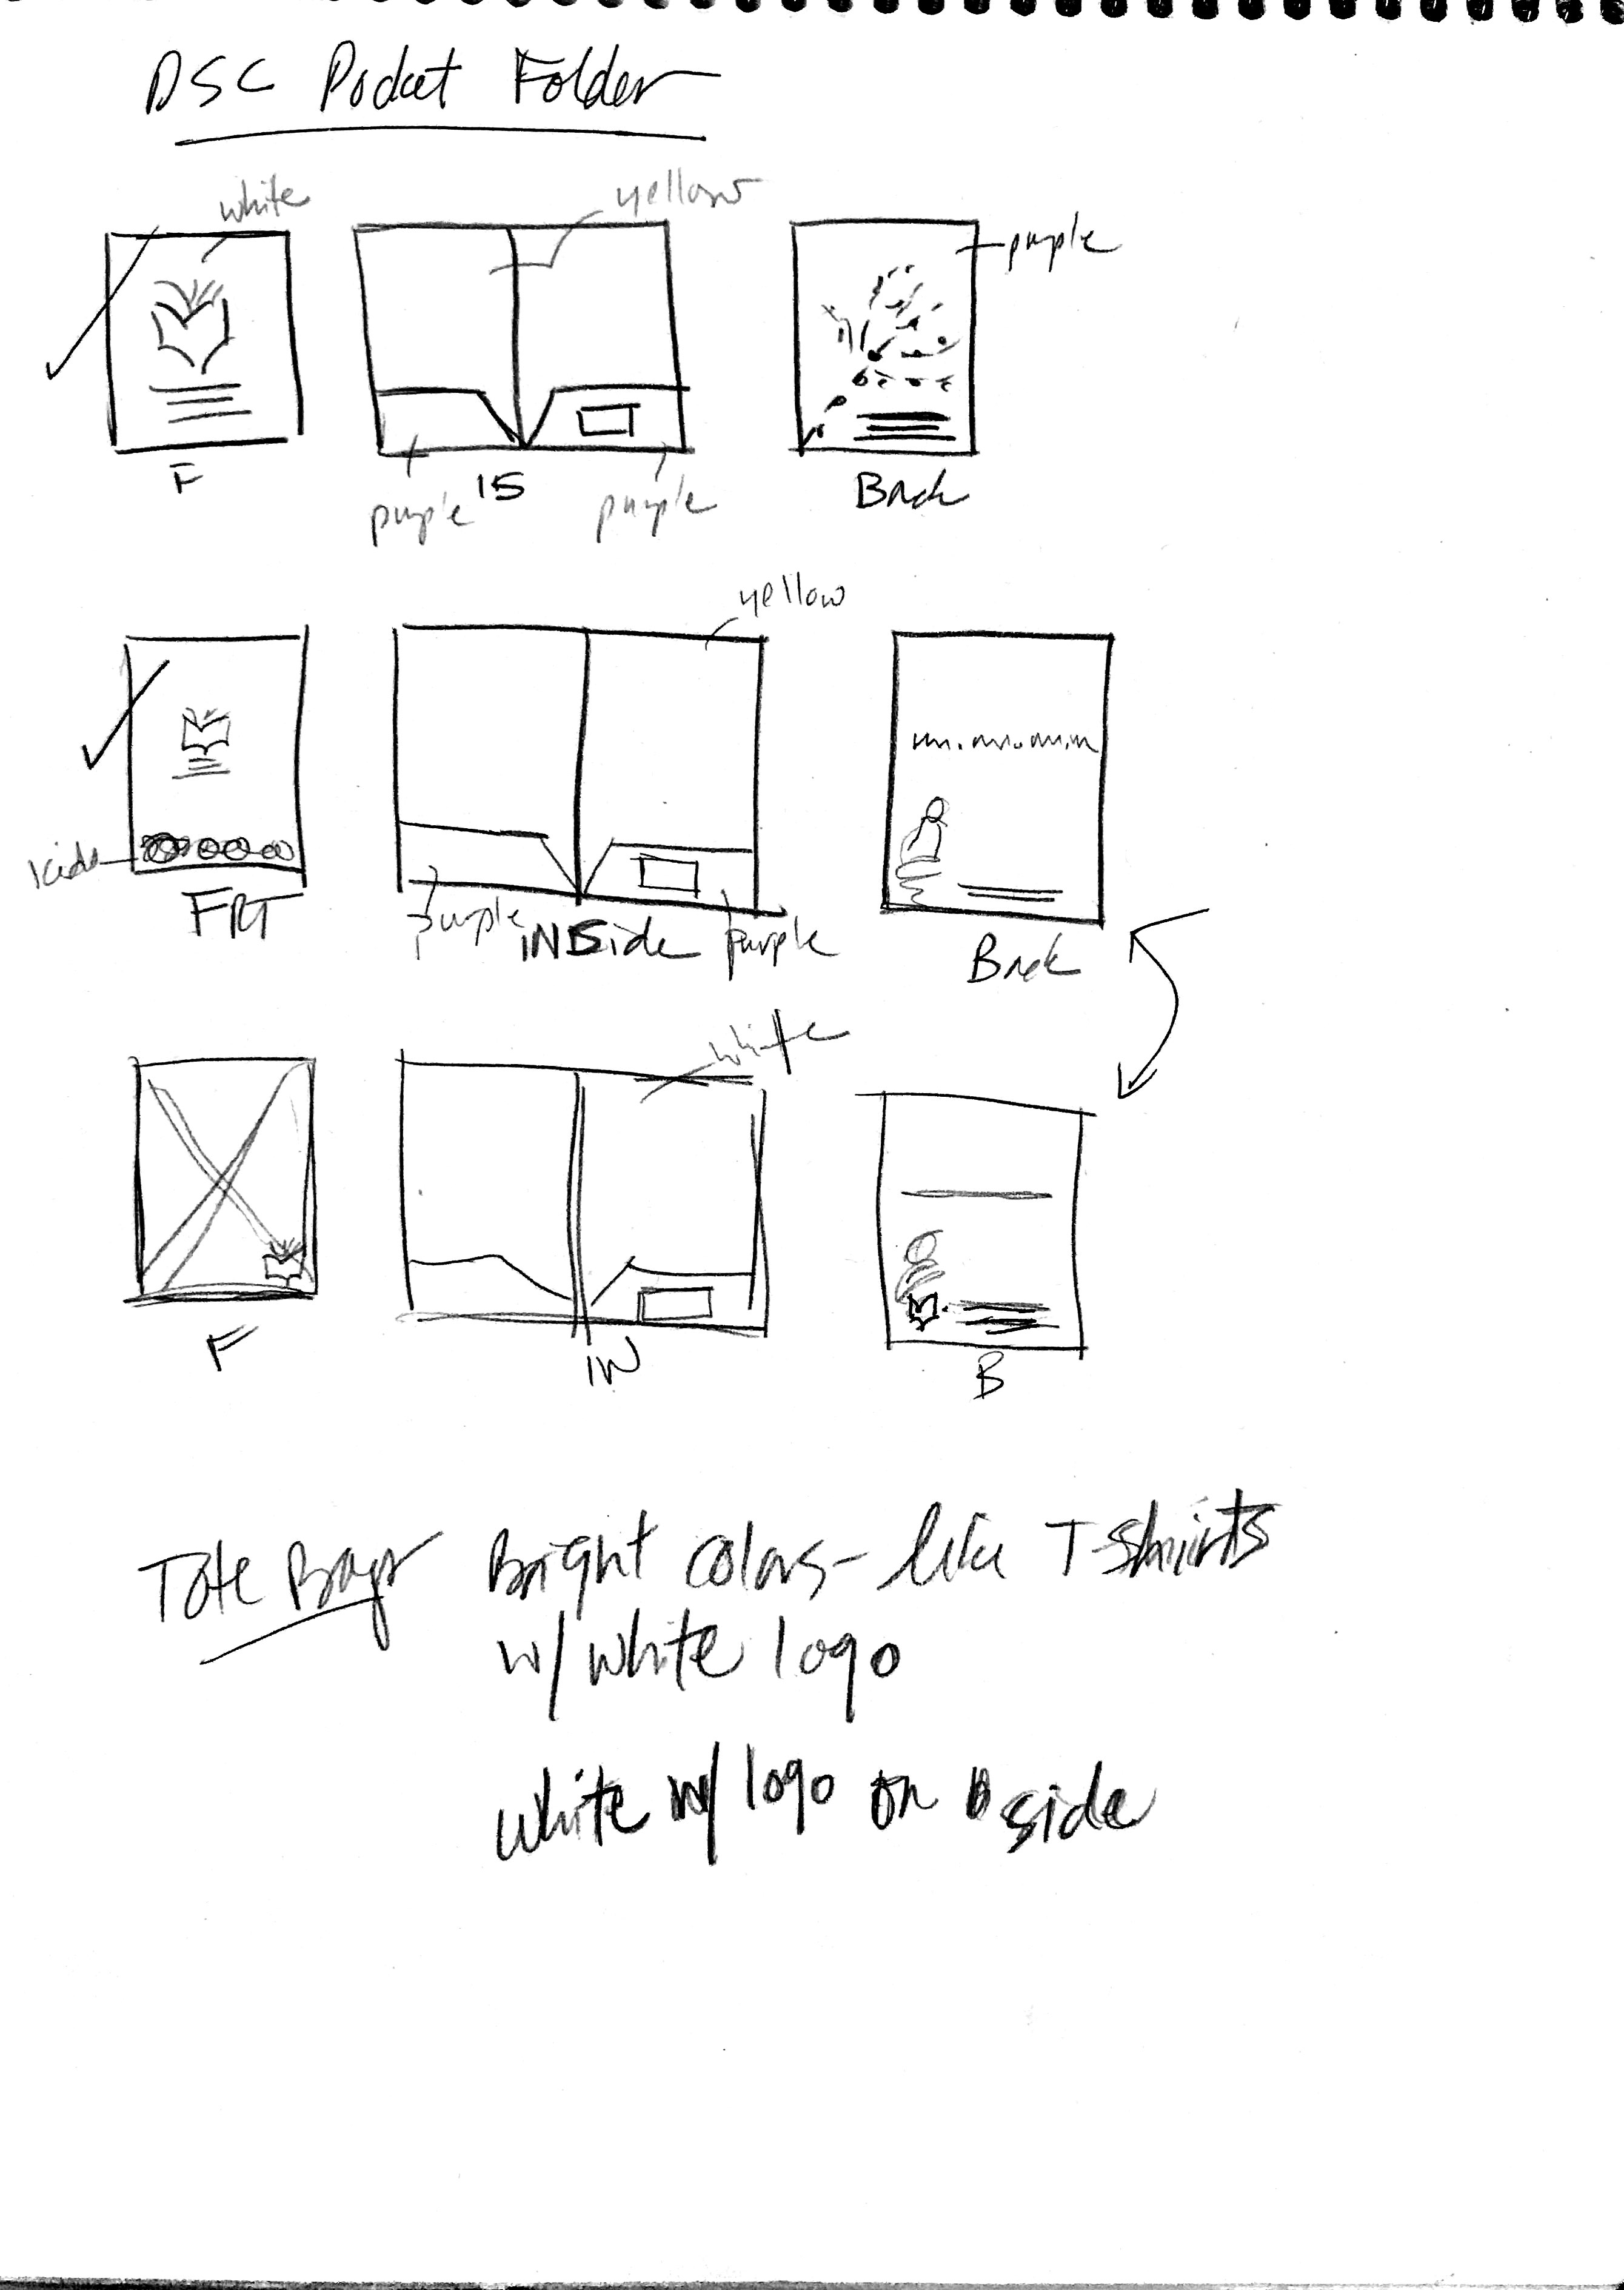 pocket folder sketches